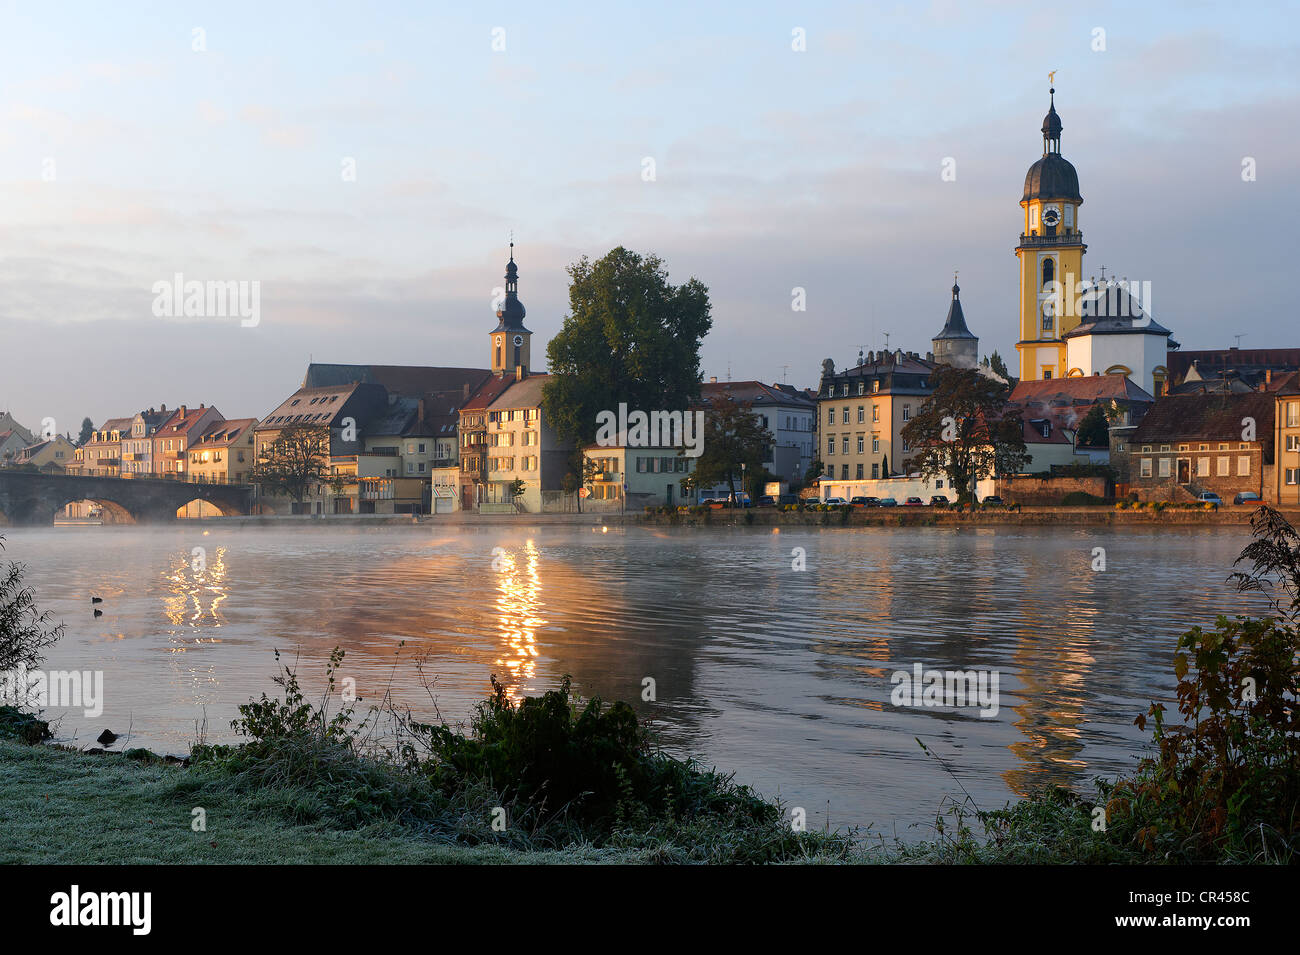 Ufer des Mains mit der katholischen Kirche St. Johannes, Kitzingen, Unterfranken, Franken, Bayern, Deutschland, Europa Stockfoto